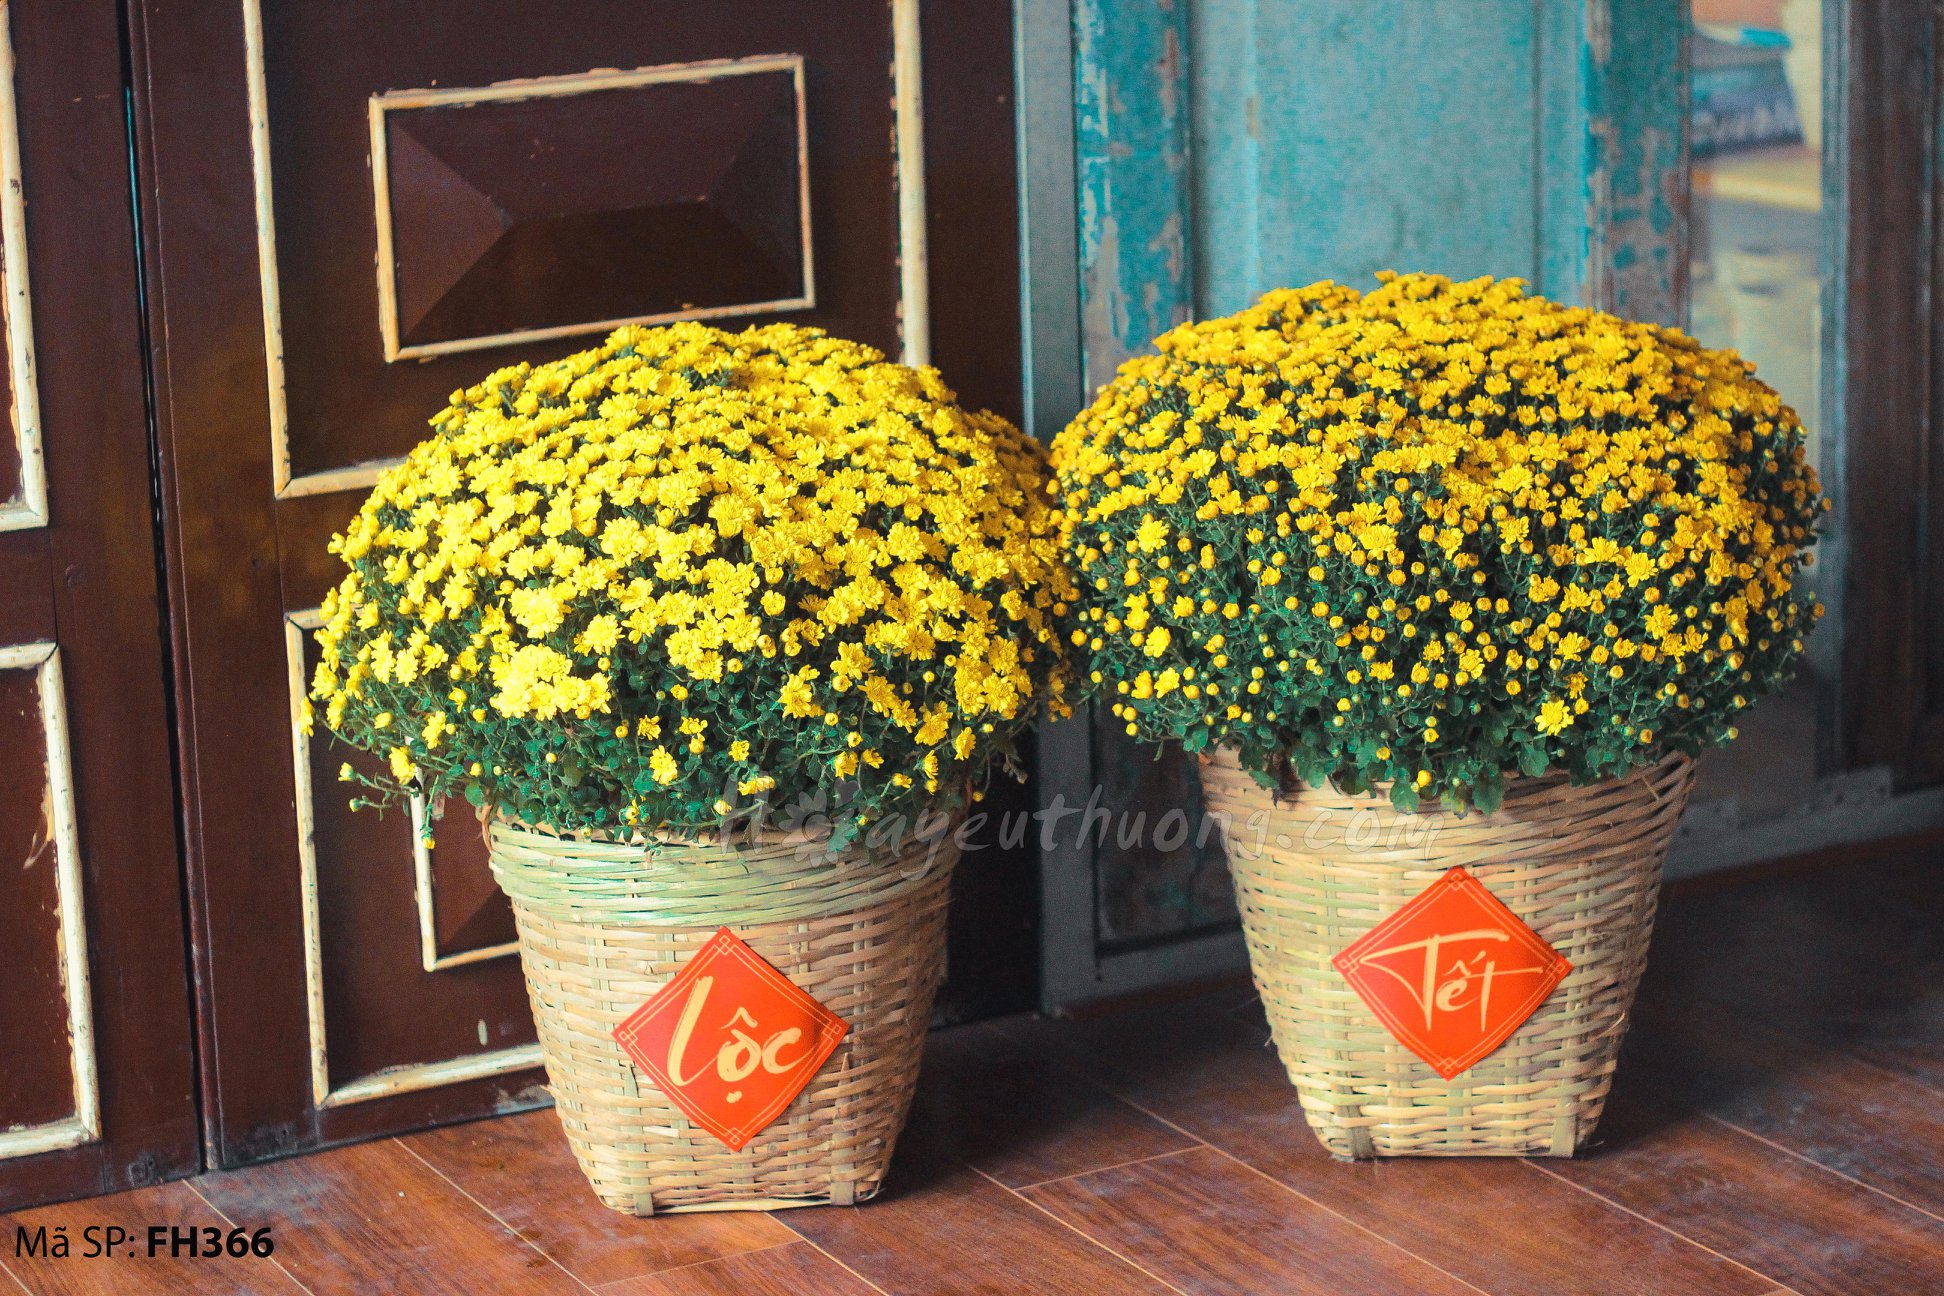 Hoa cúc vàng, màu sắc tươi sáng và nhẹ nhàng, là loài hoa tượng trưng cho tình yêu và sự sống. Hãy cùng chiêm ngưỡng những bức hình về loài hoa này.